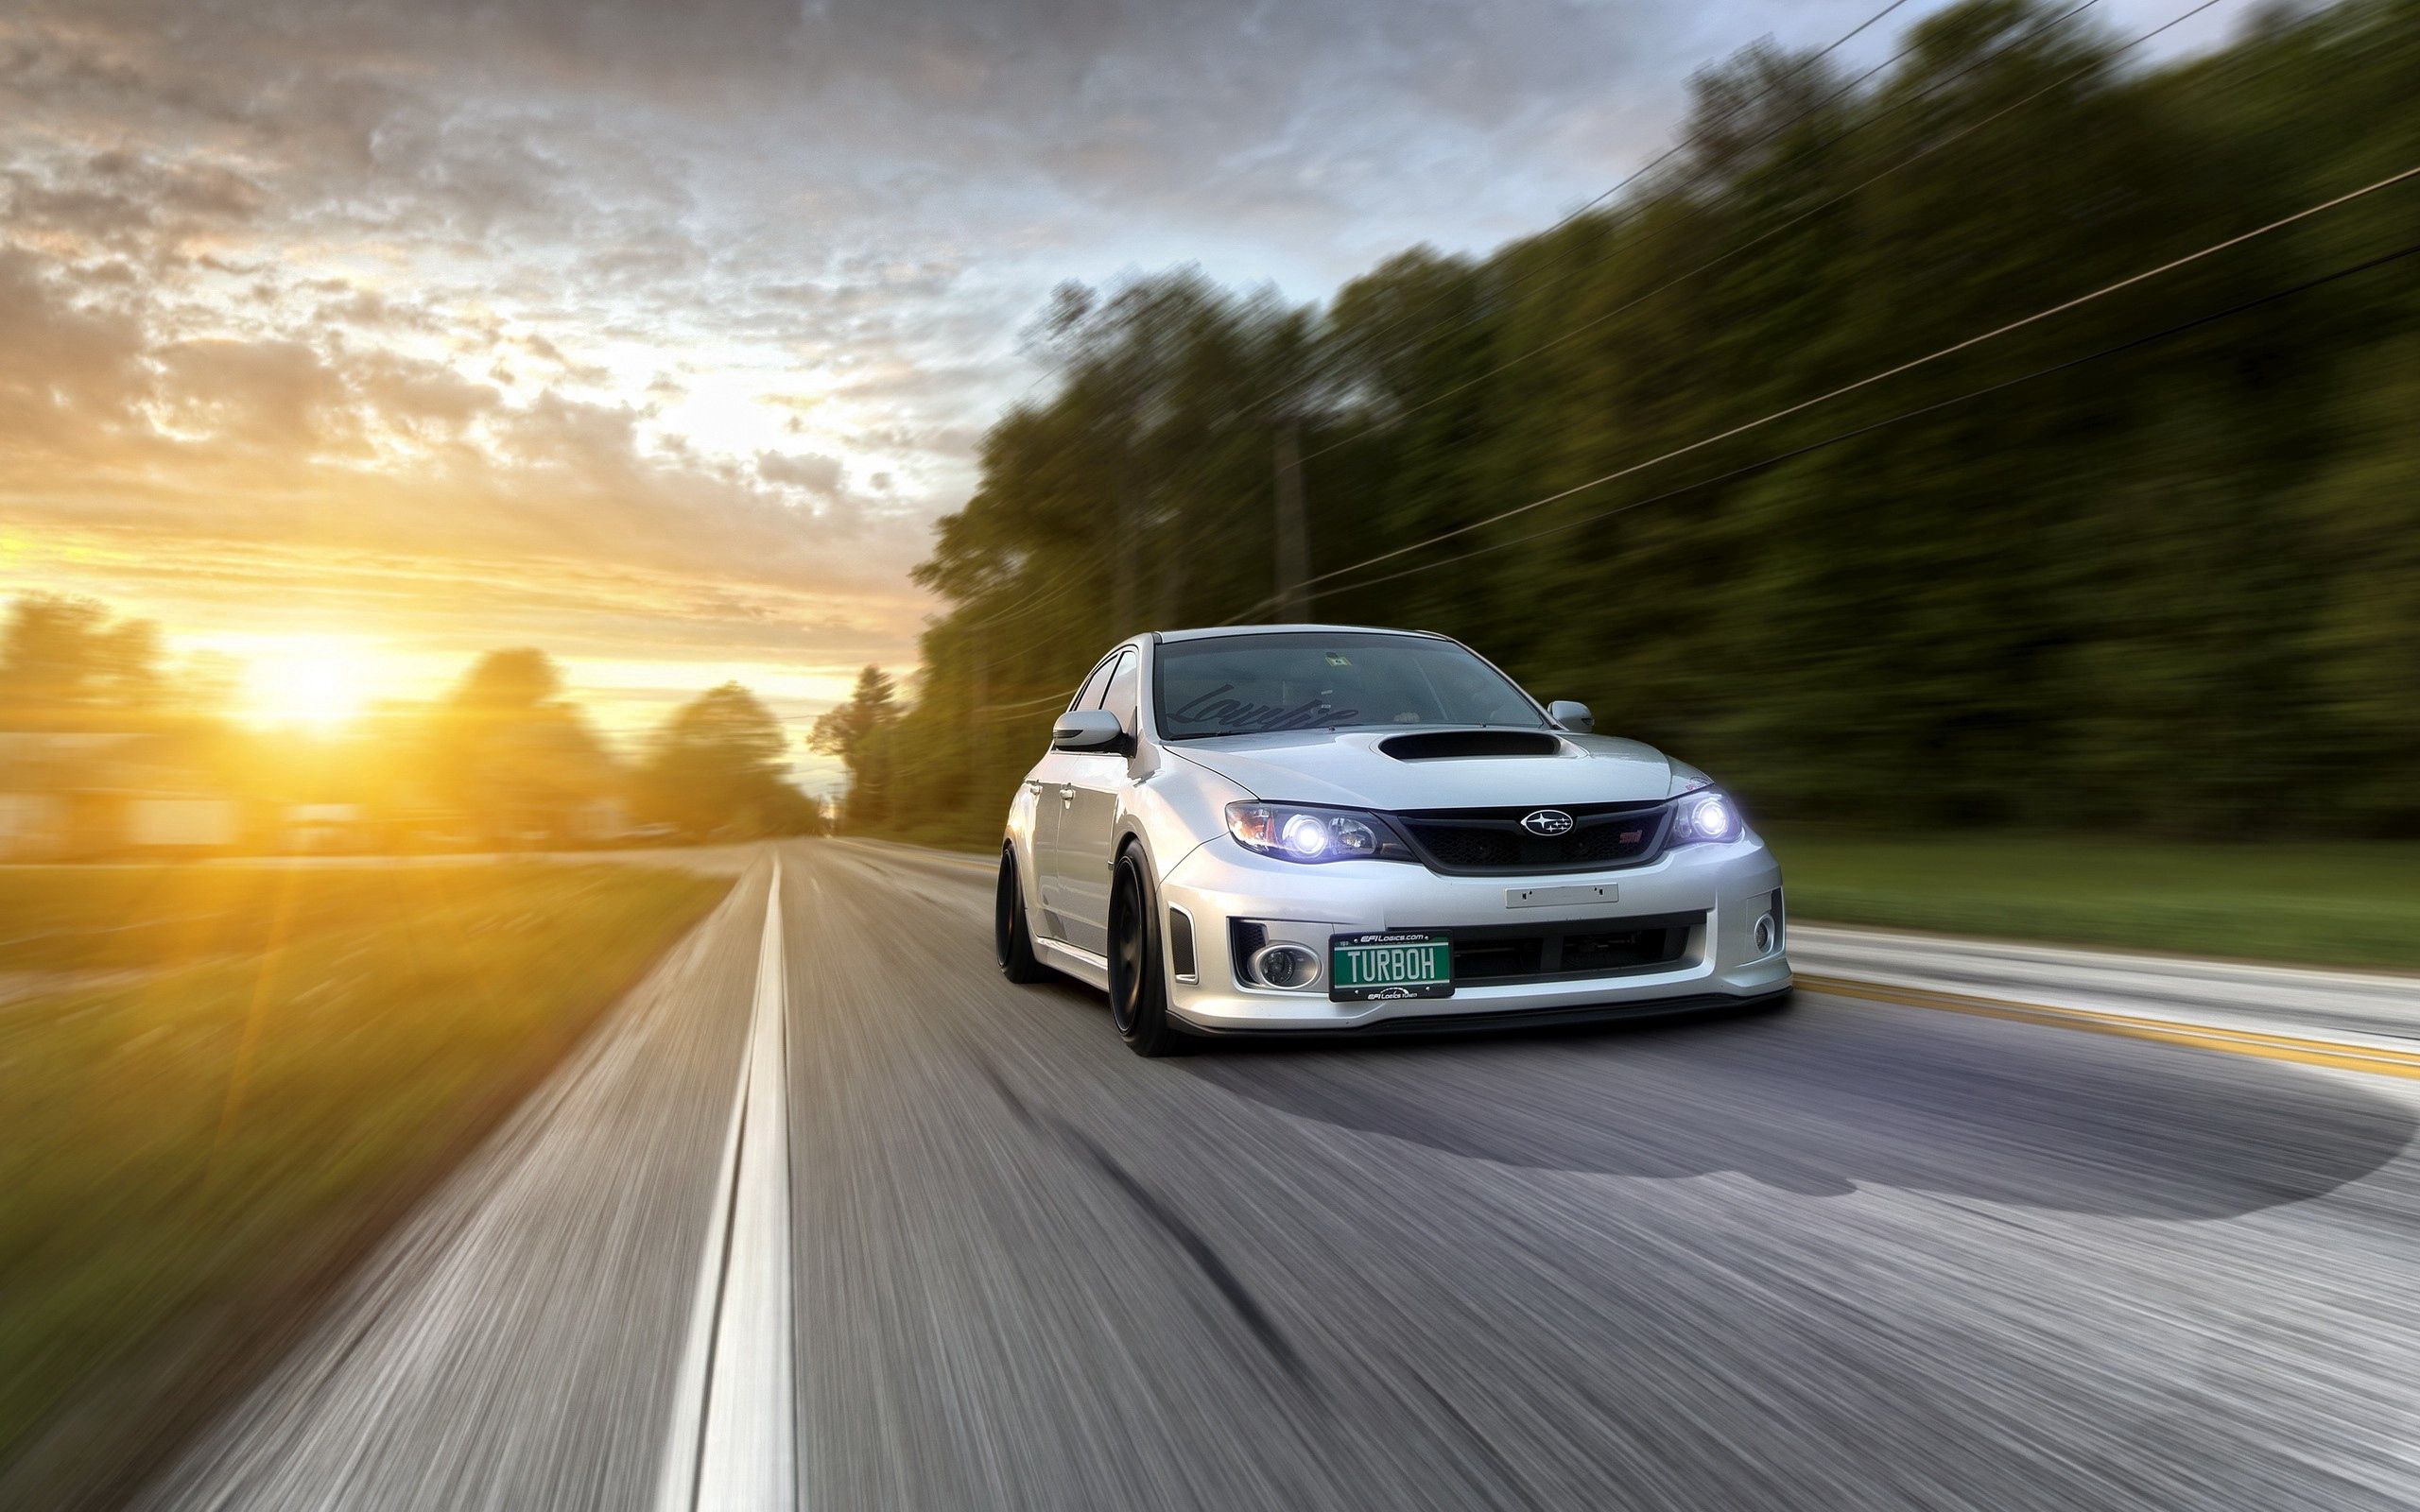 Download mobile wallpaper Subaru Impreza Wrx, Traffic, Movement, Road, Auto, Cars for free.